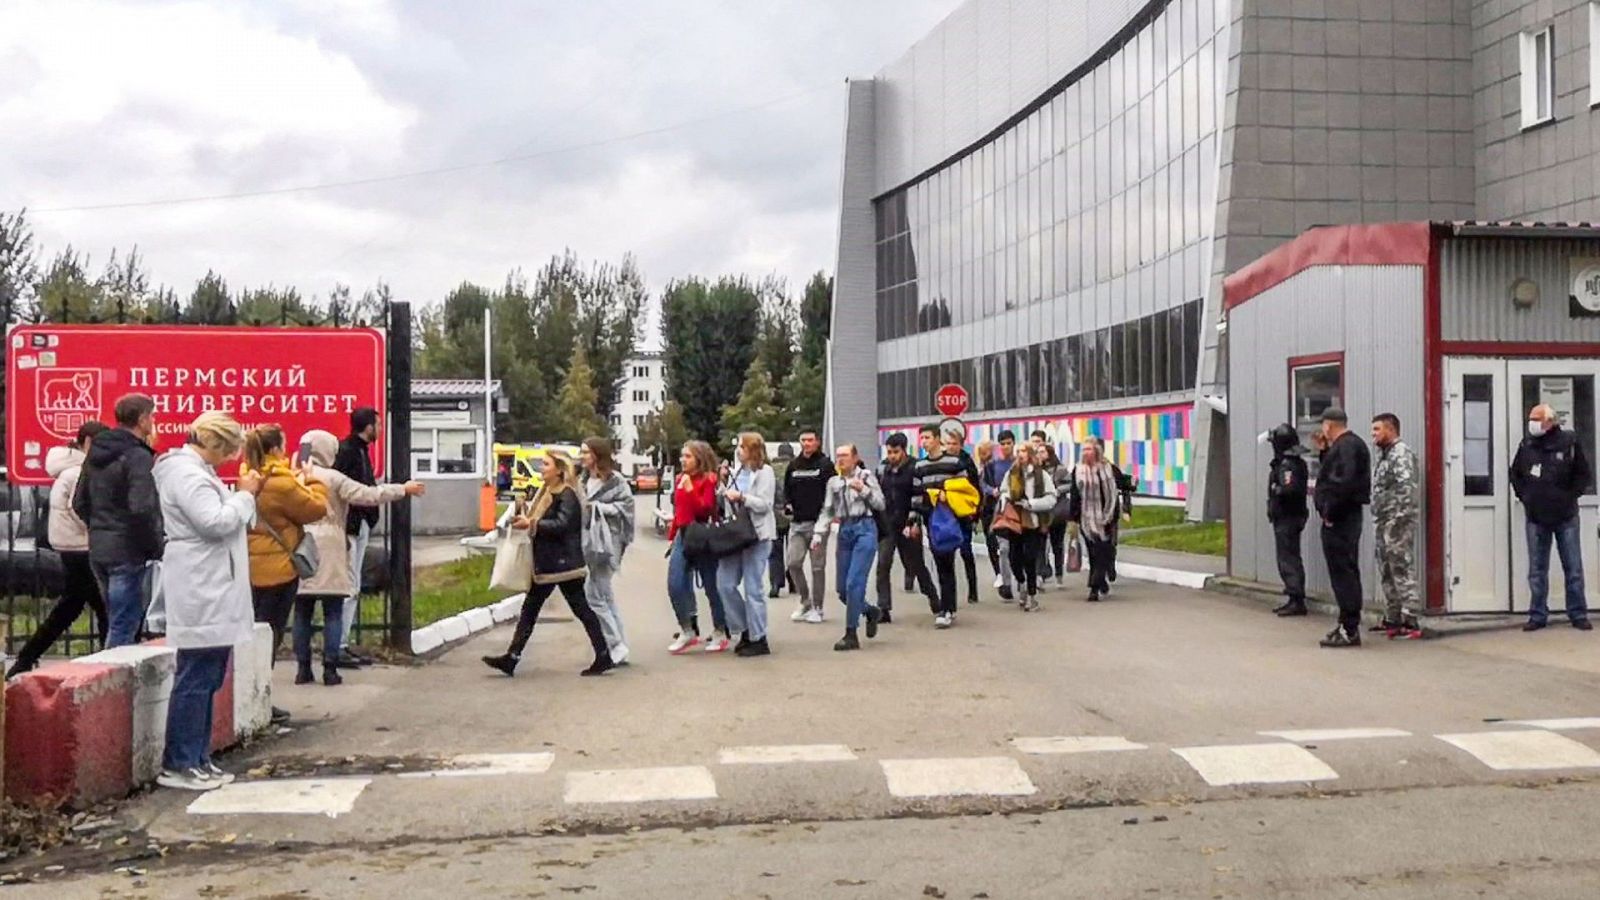 Al menos seis muertos y 24 heridos después de un tiroteo en una universidad rusa